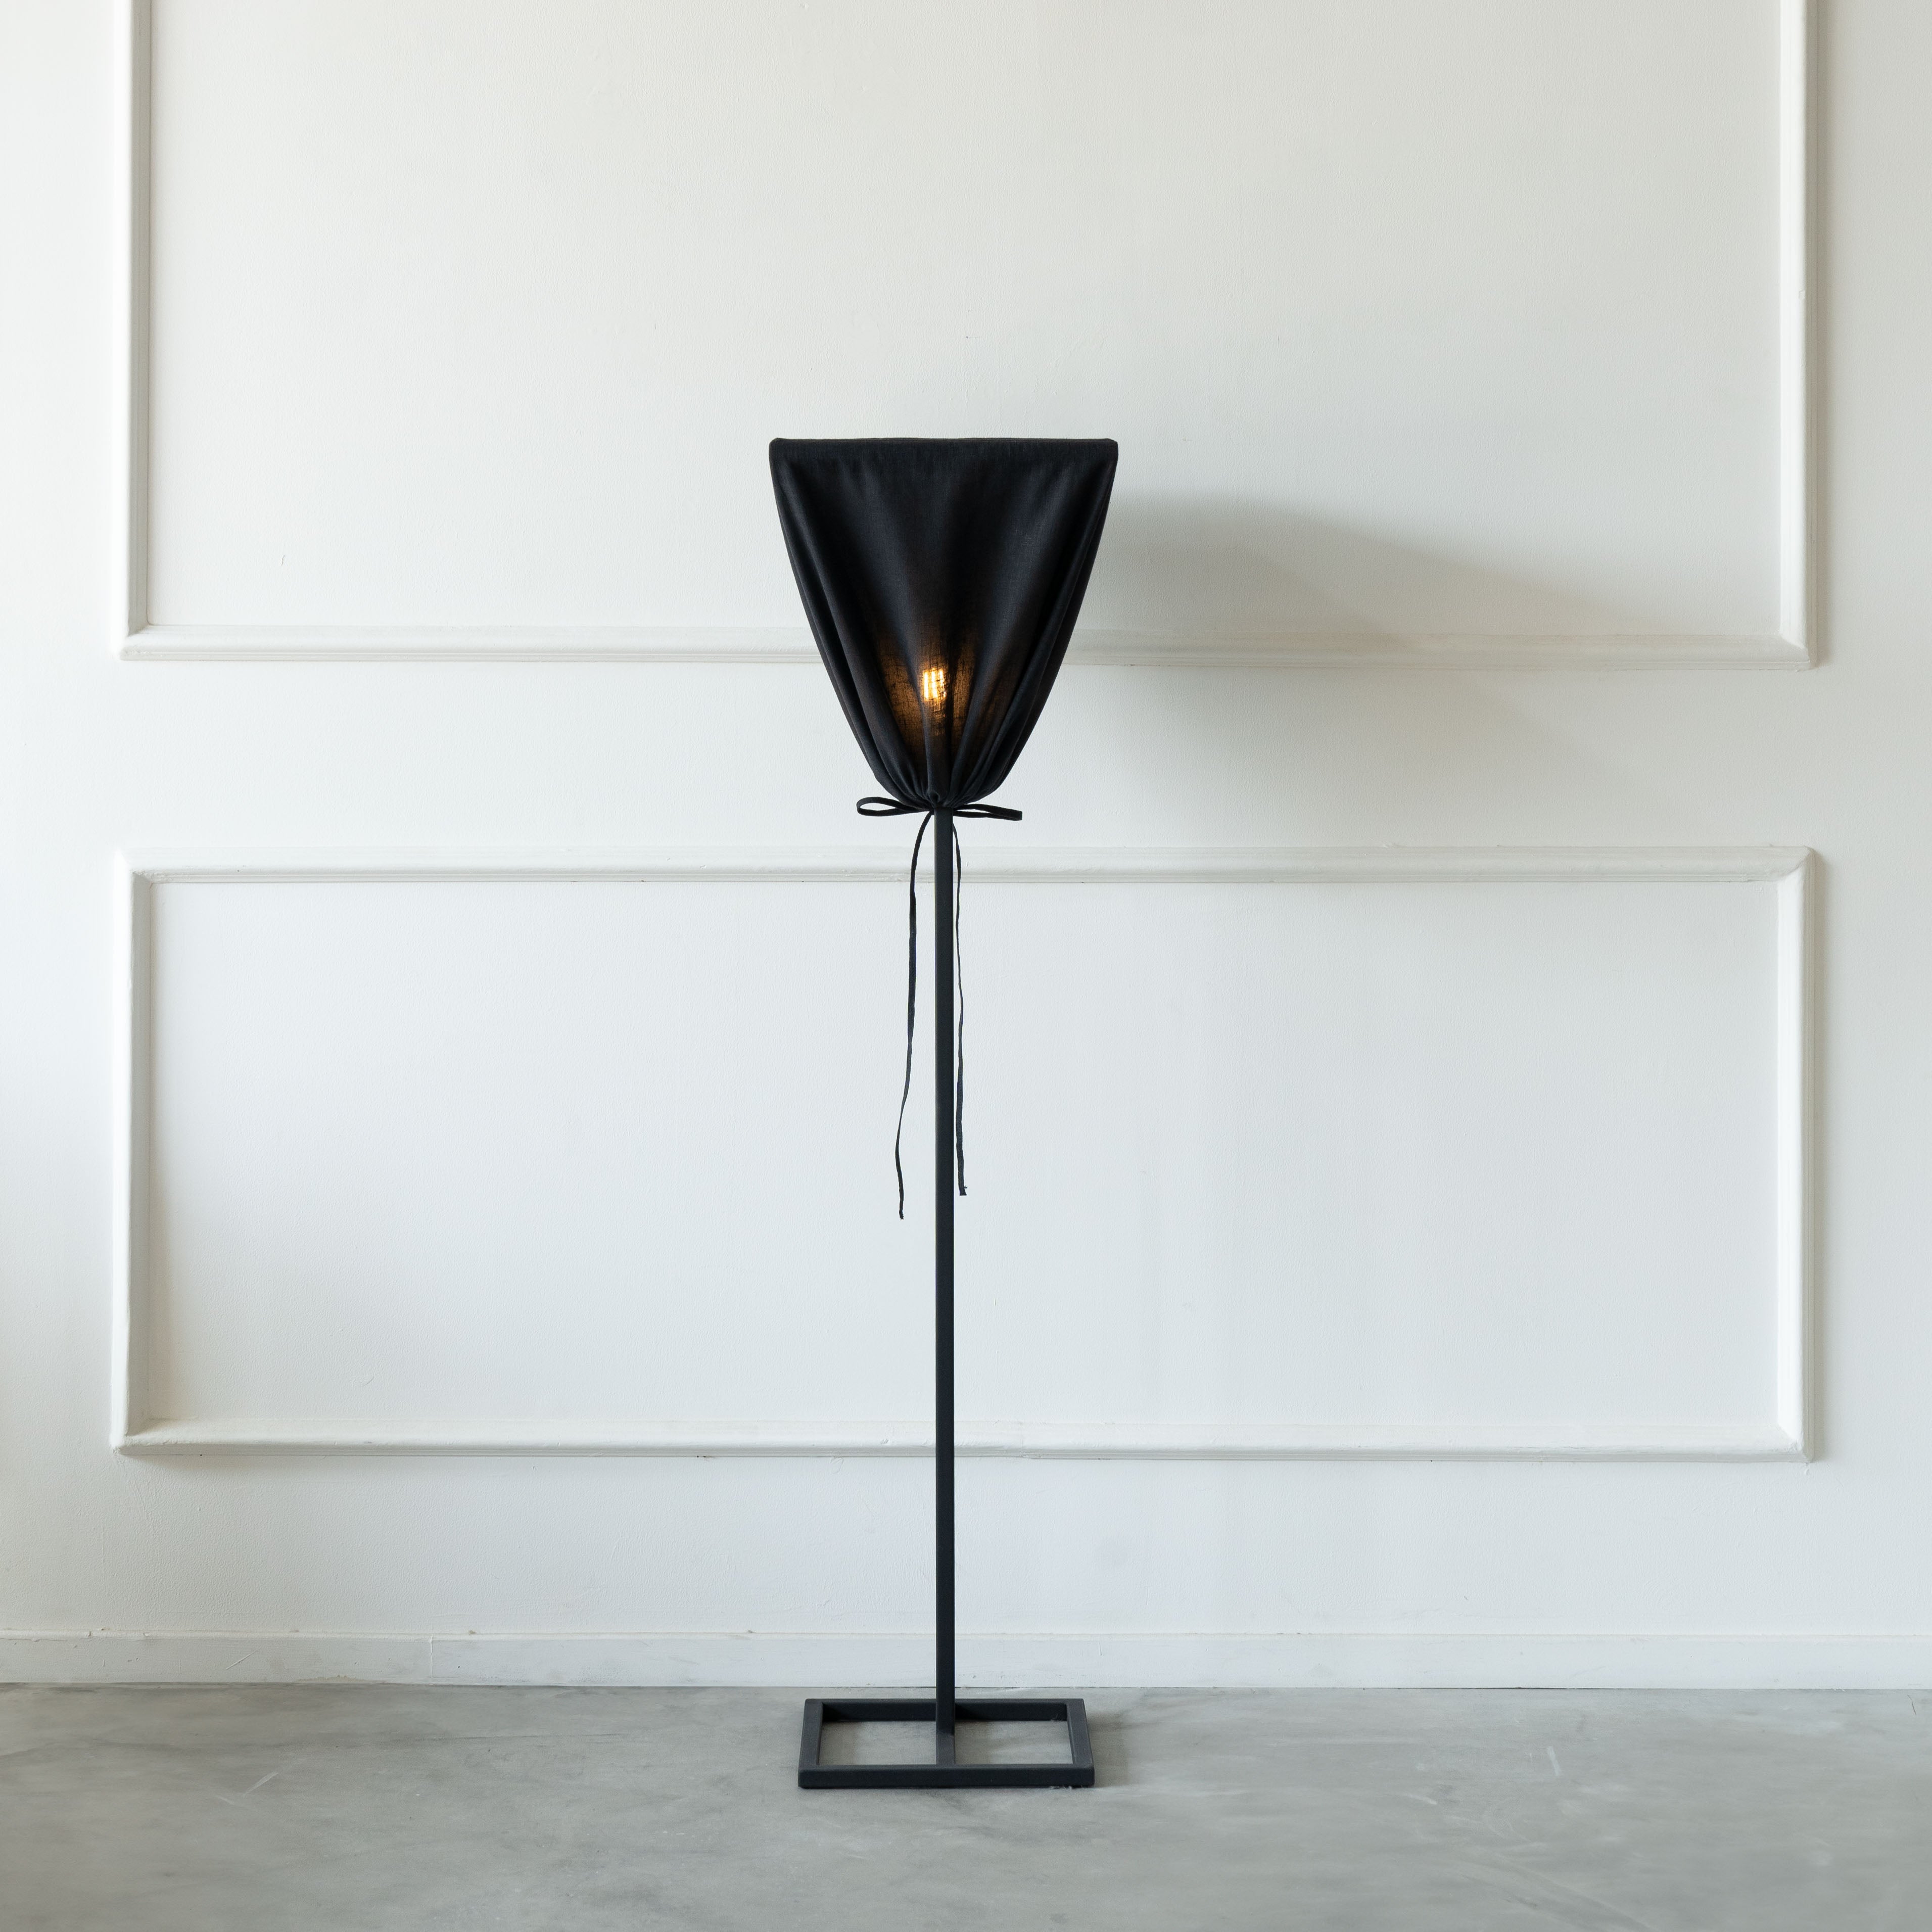 Bellona Lamp  - WS Living - UAE - Floor Lamp Wood and steel Furnitures - Dubai